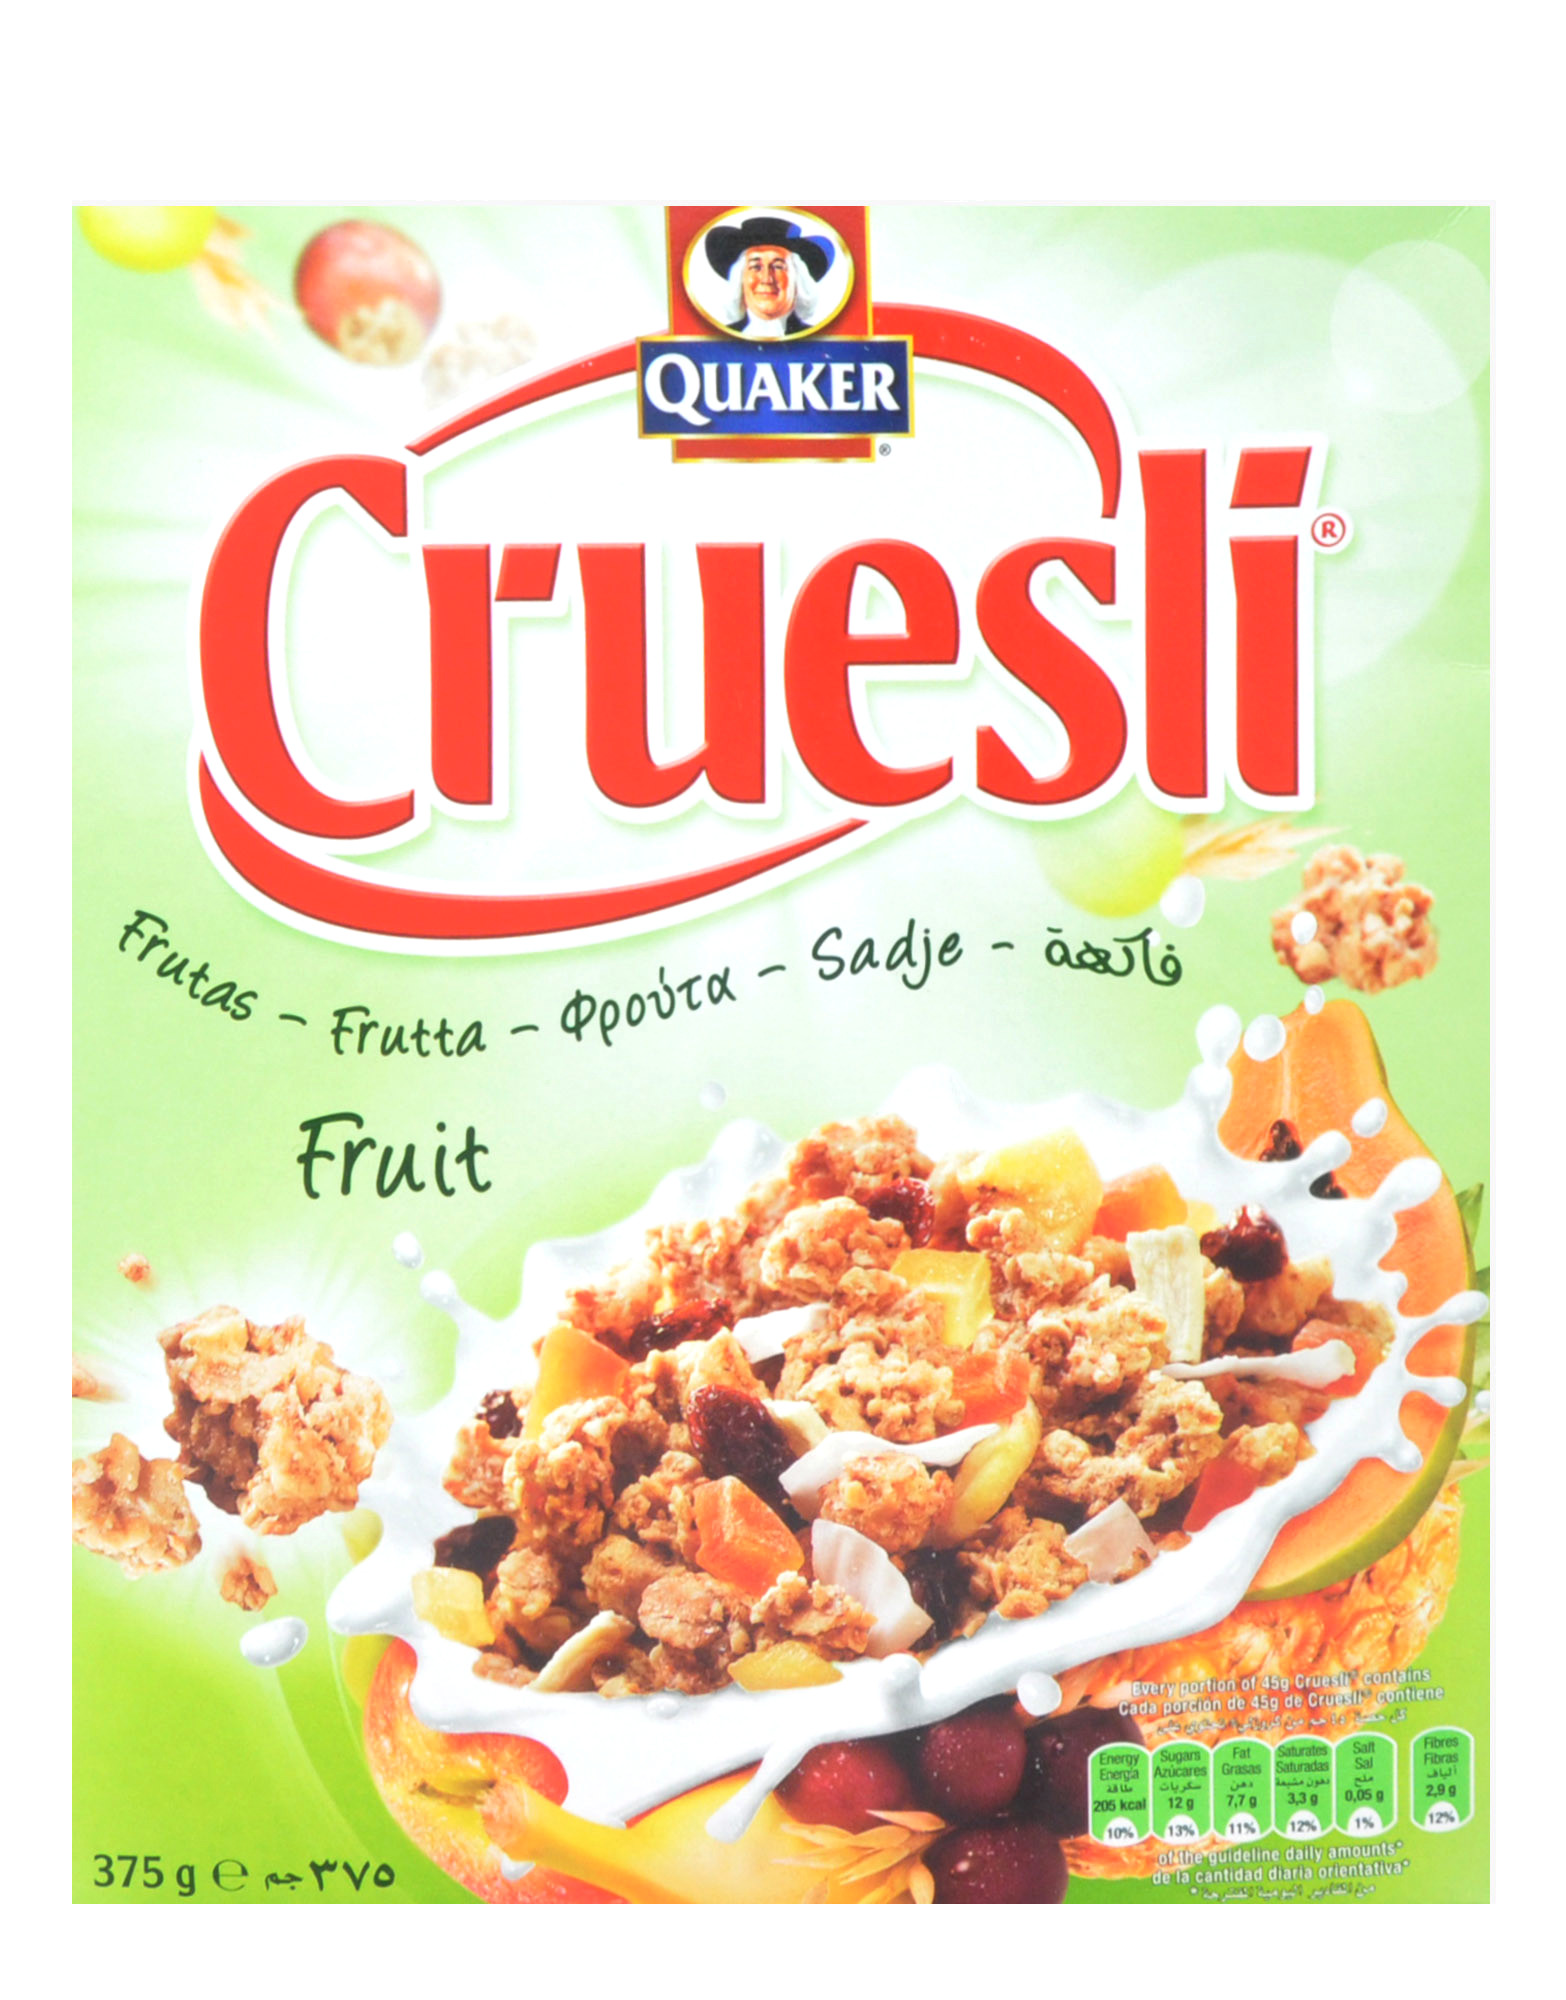 Cruesli Fruit by Quaker, 375 grams 